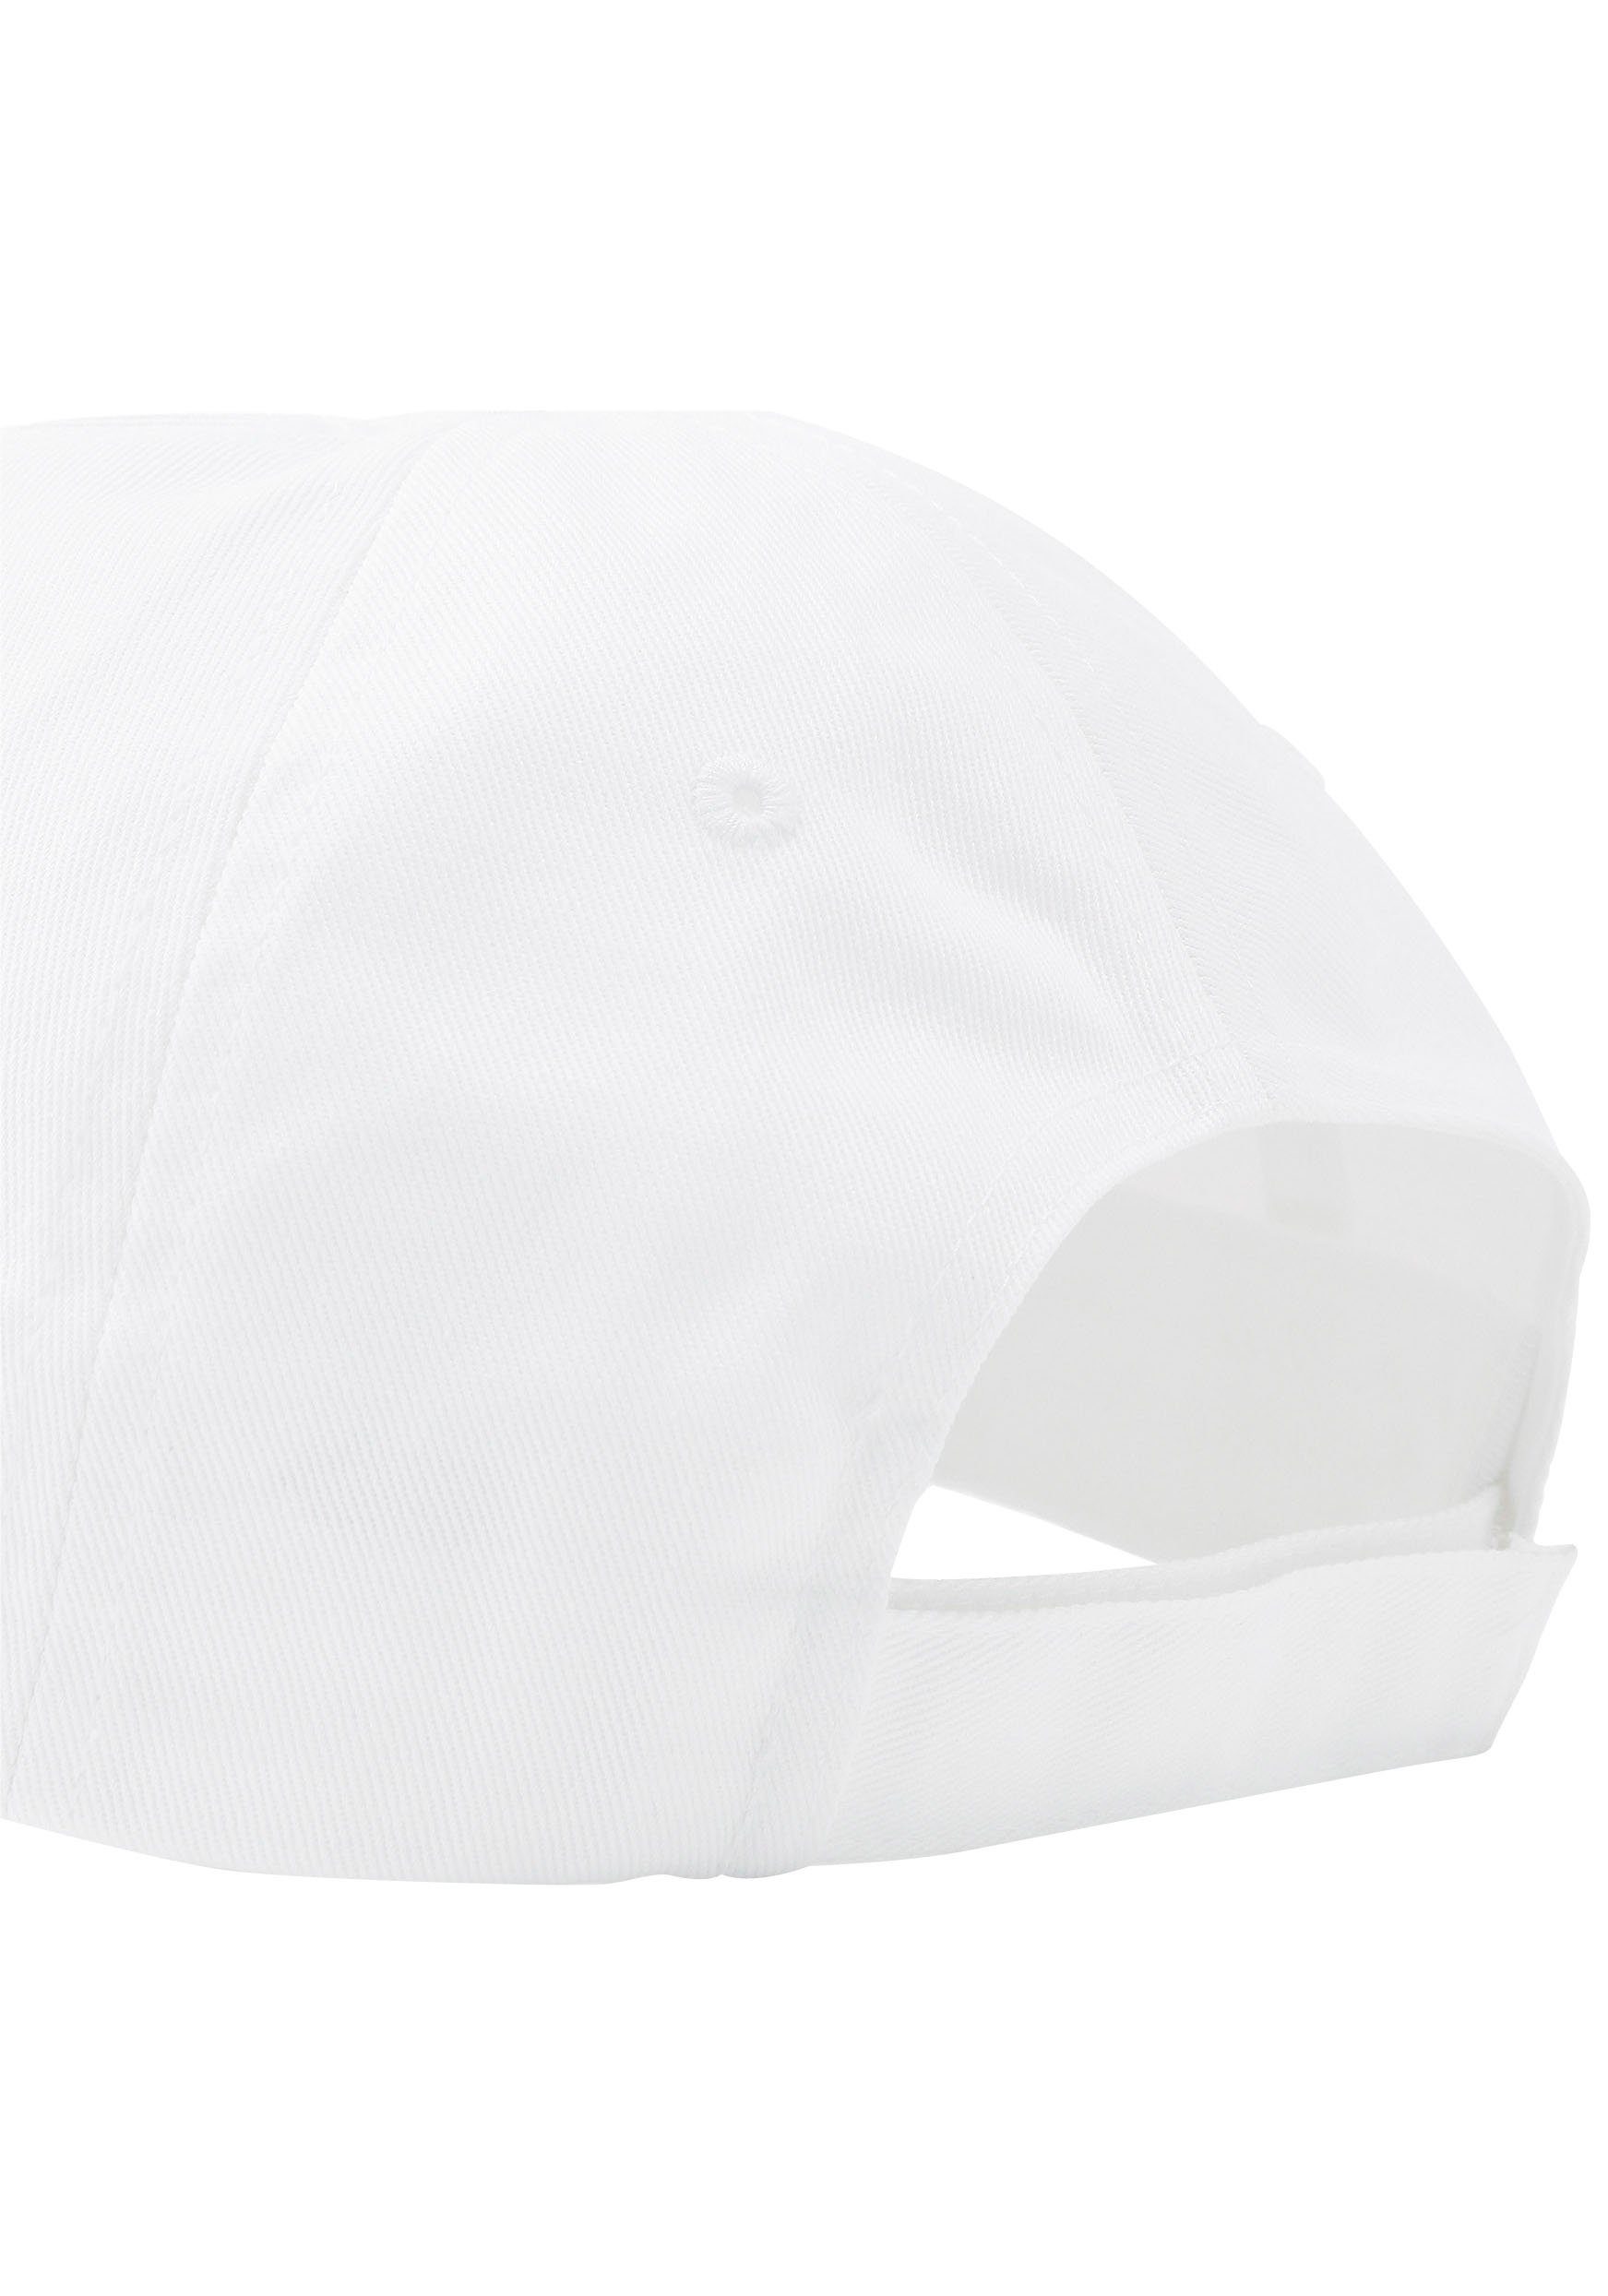 Baseball CAP PUMA white-No,1 Cap ESS